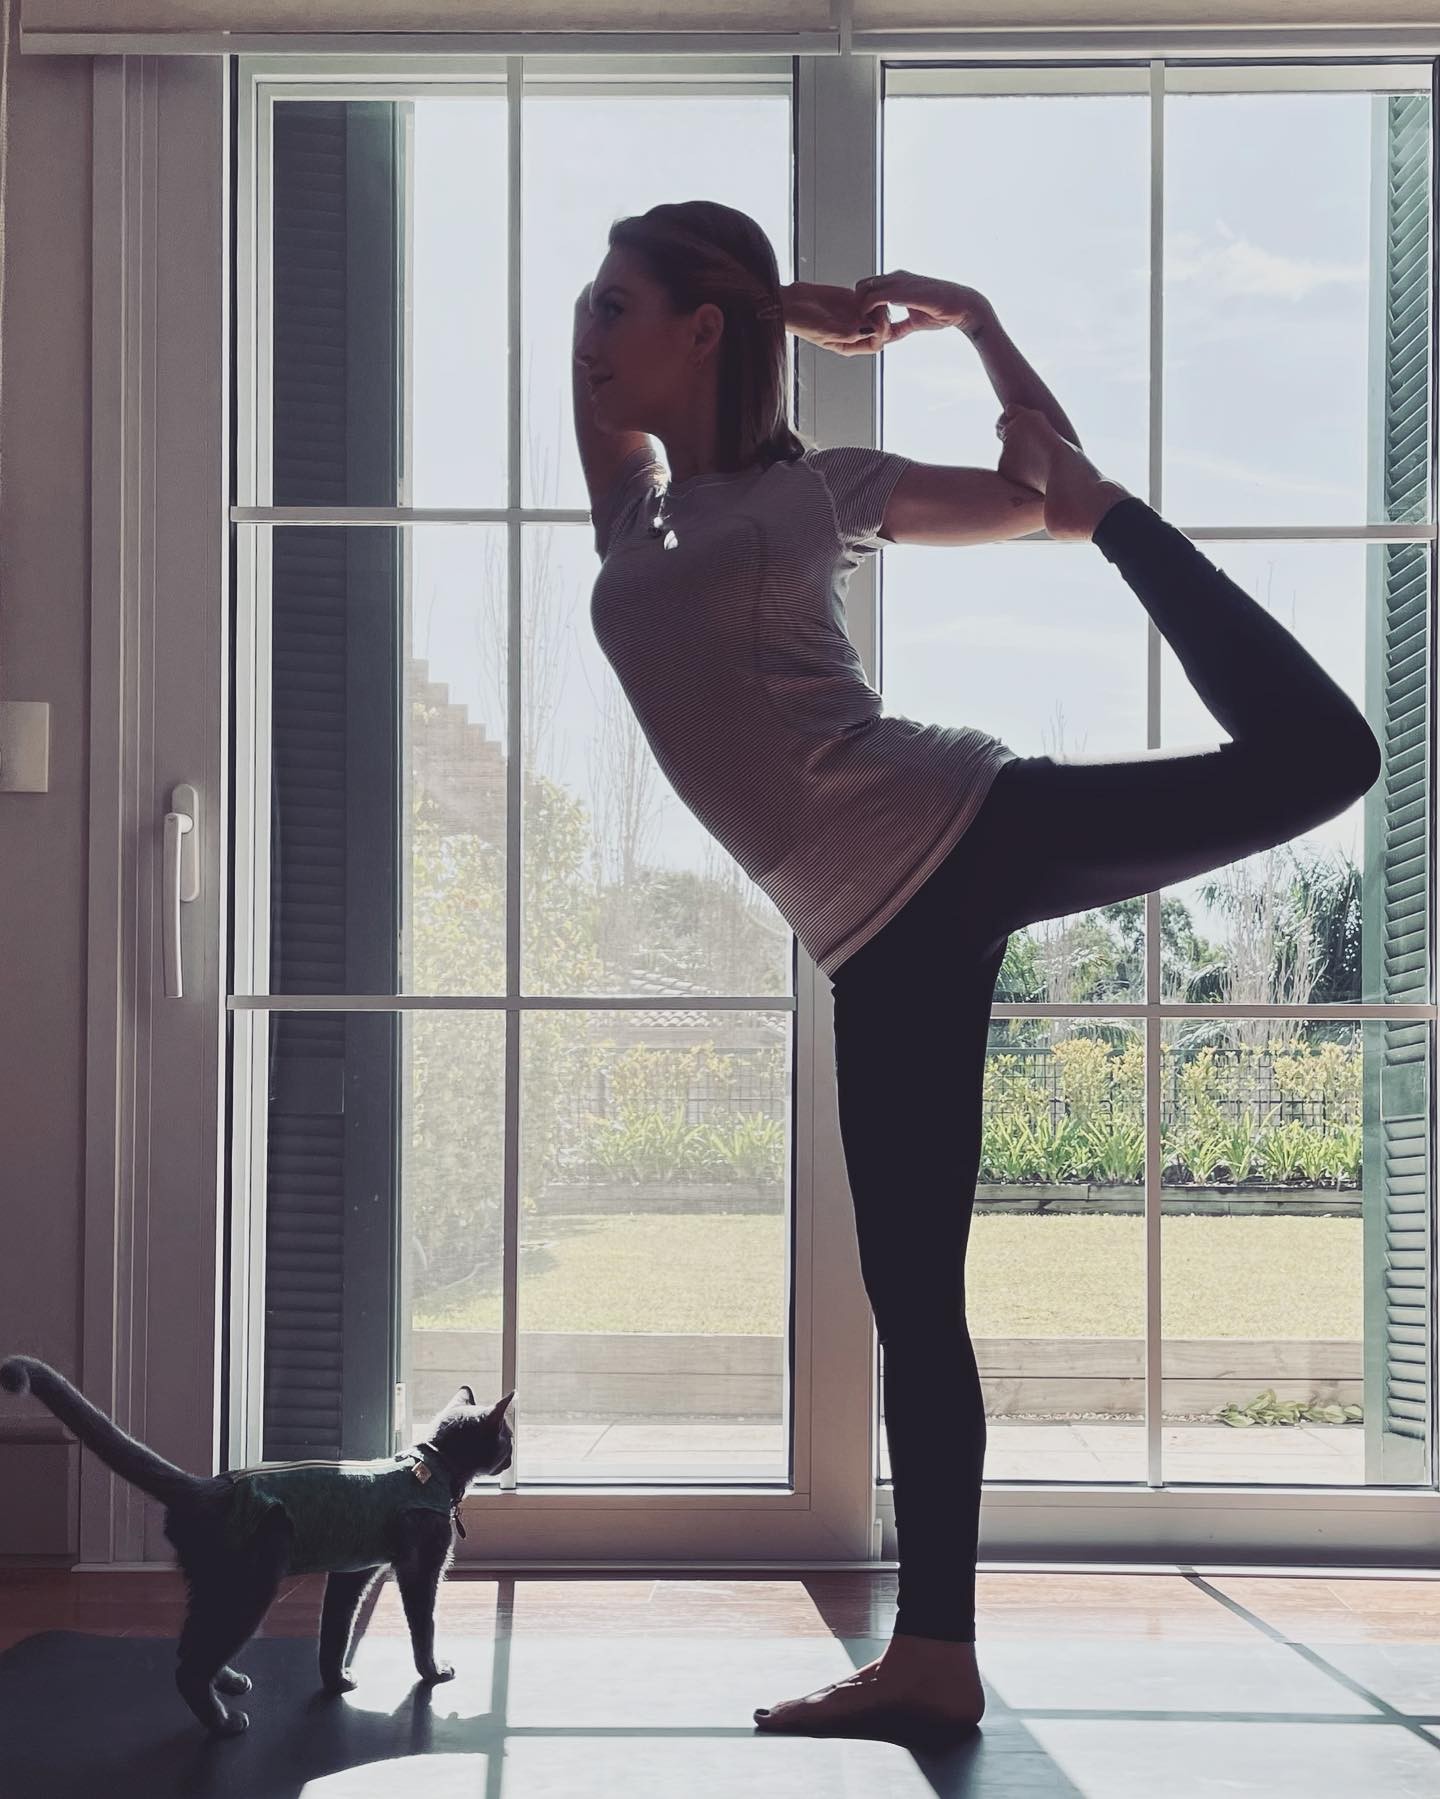 Sandy mostra rotina matinal com yoga e brinca: 'Namastego' (Foto: Reprodução / Instagram)